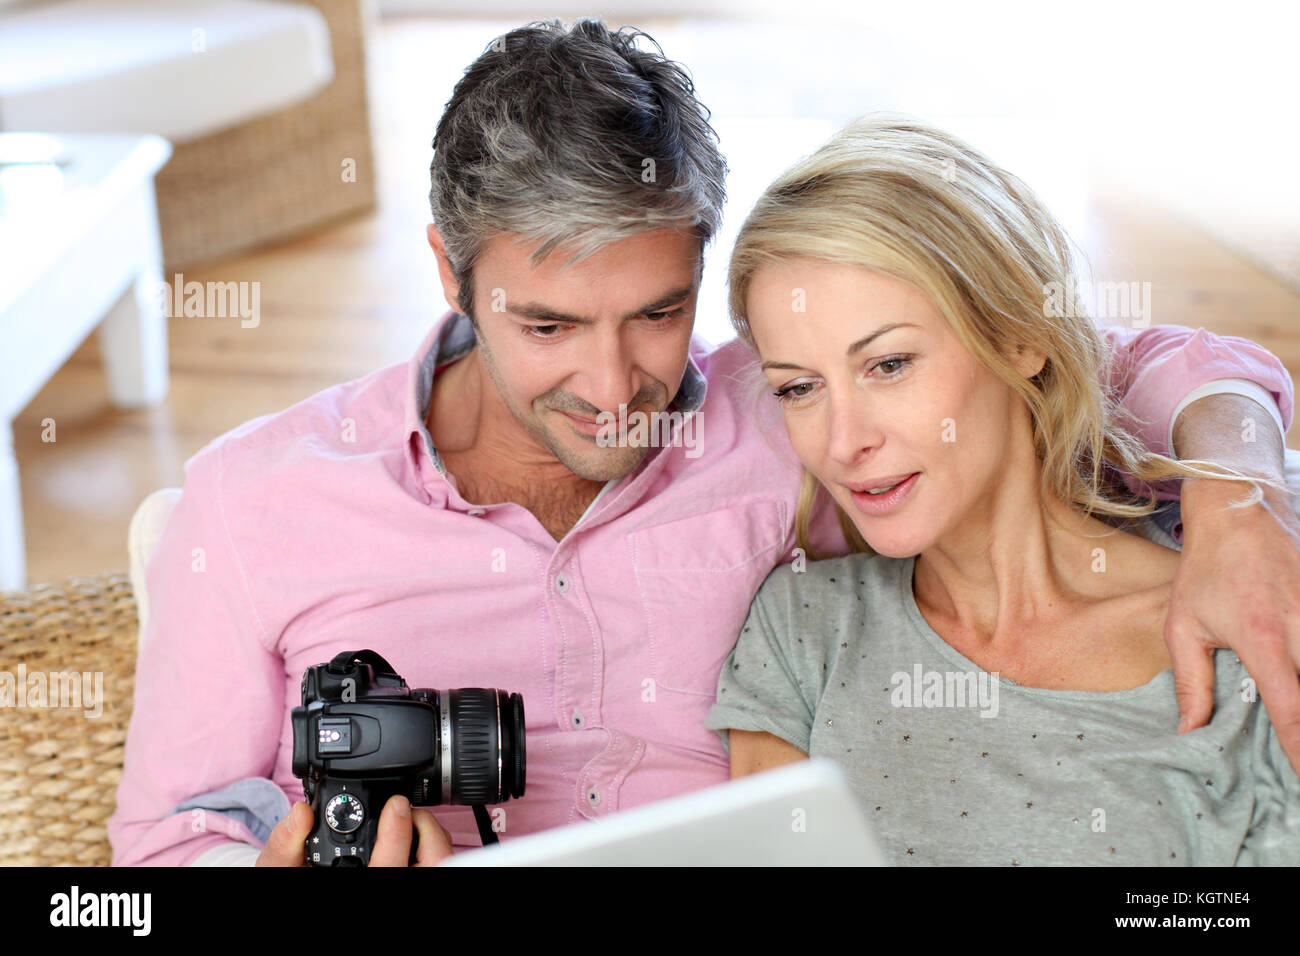 Amateur couples home video